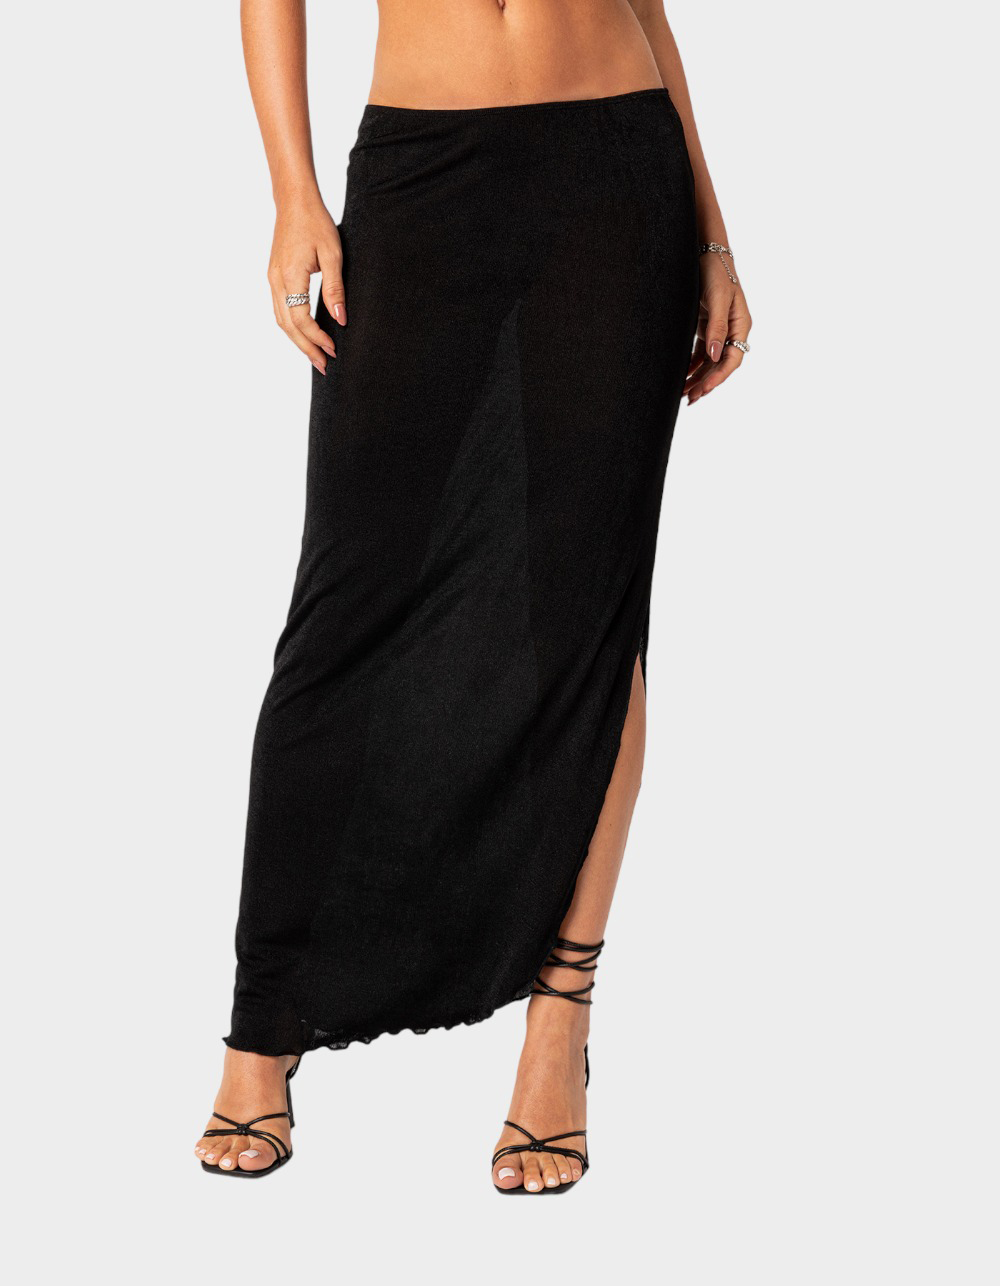 EDIKTED Milan Slitted Womens Maxi Skirt - BLACK | Tillys